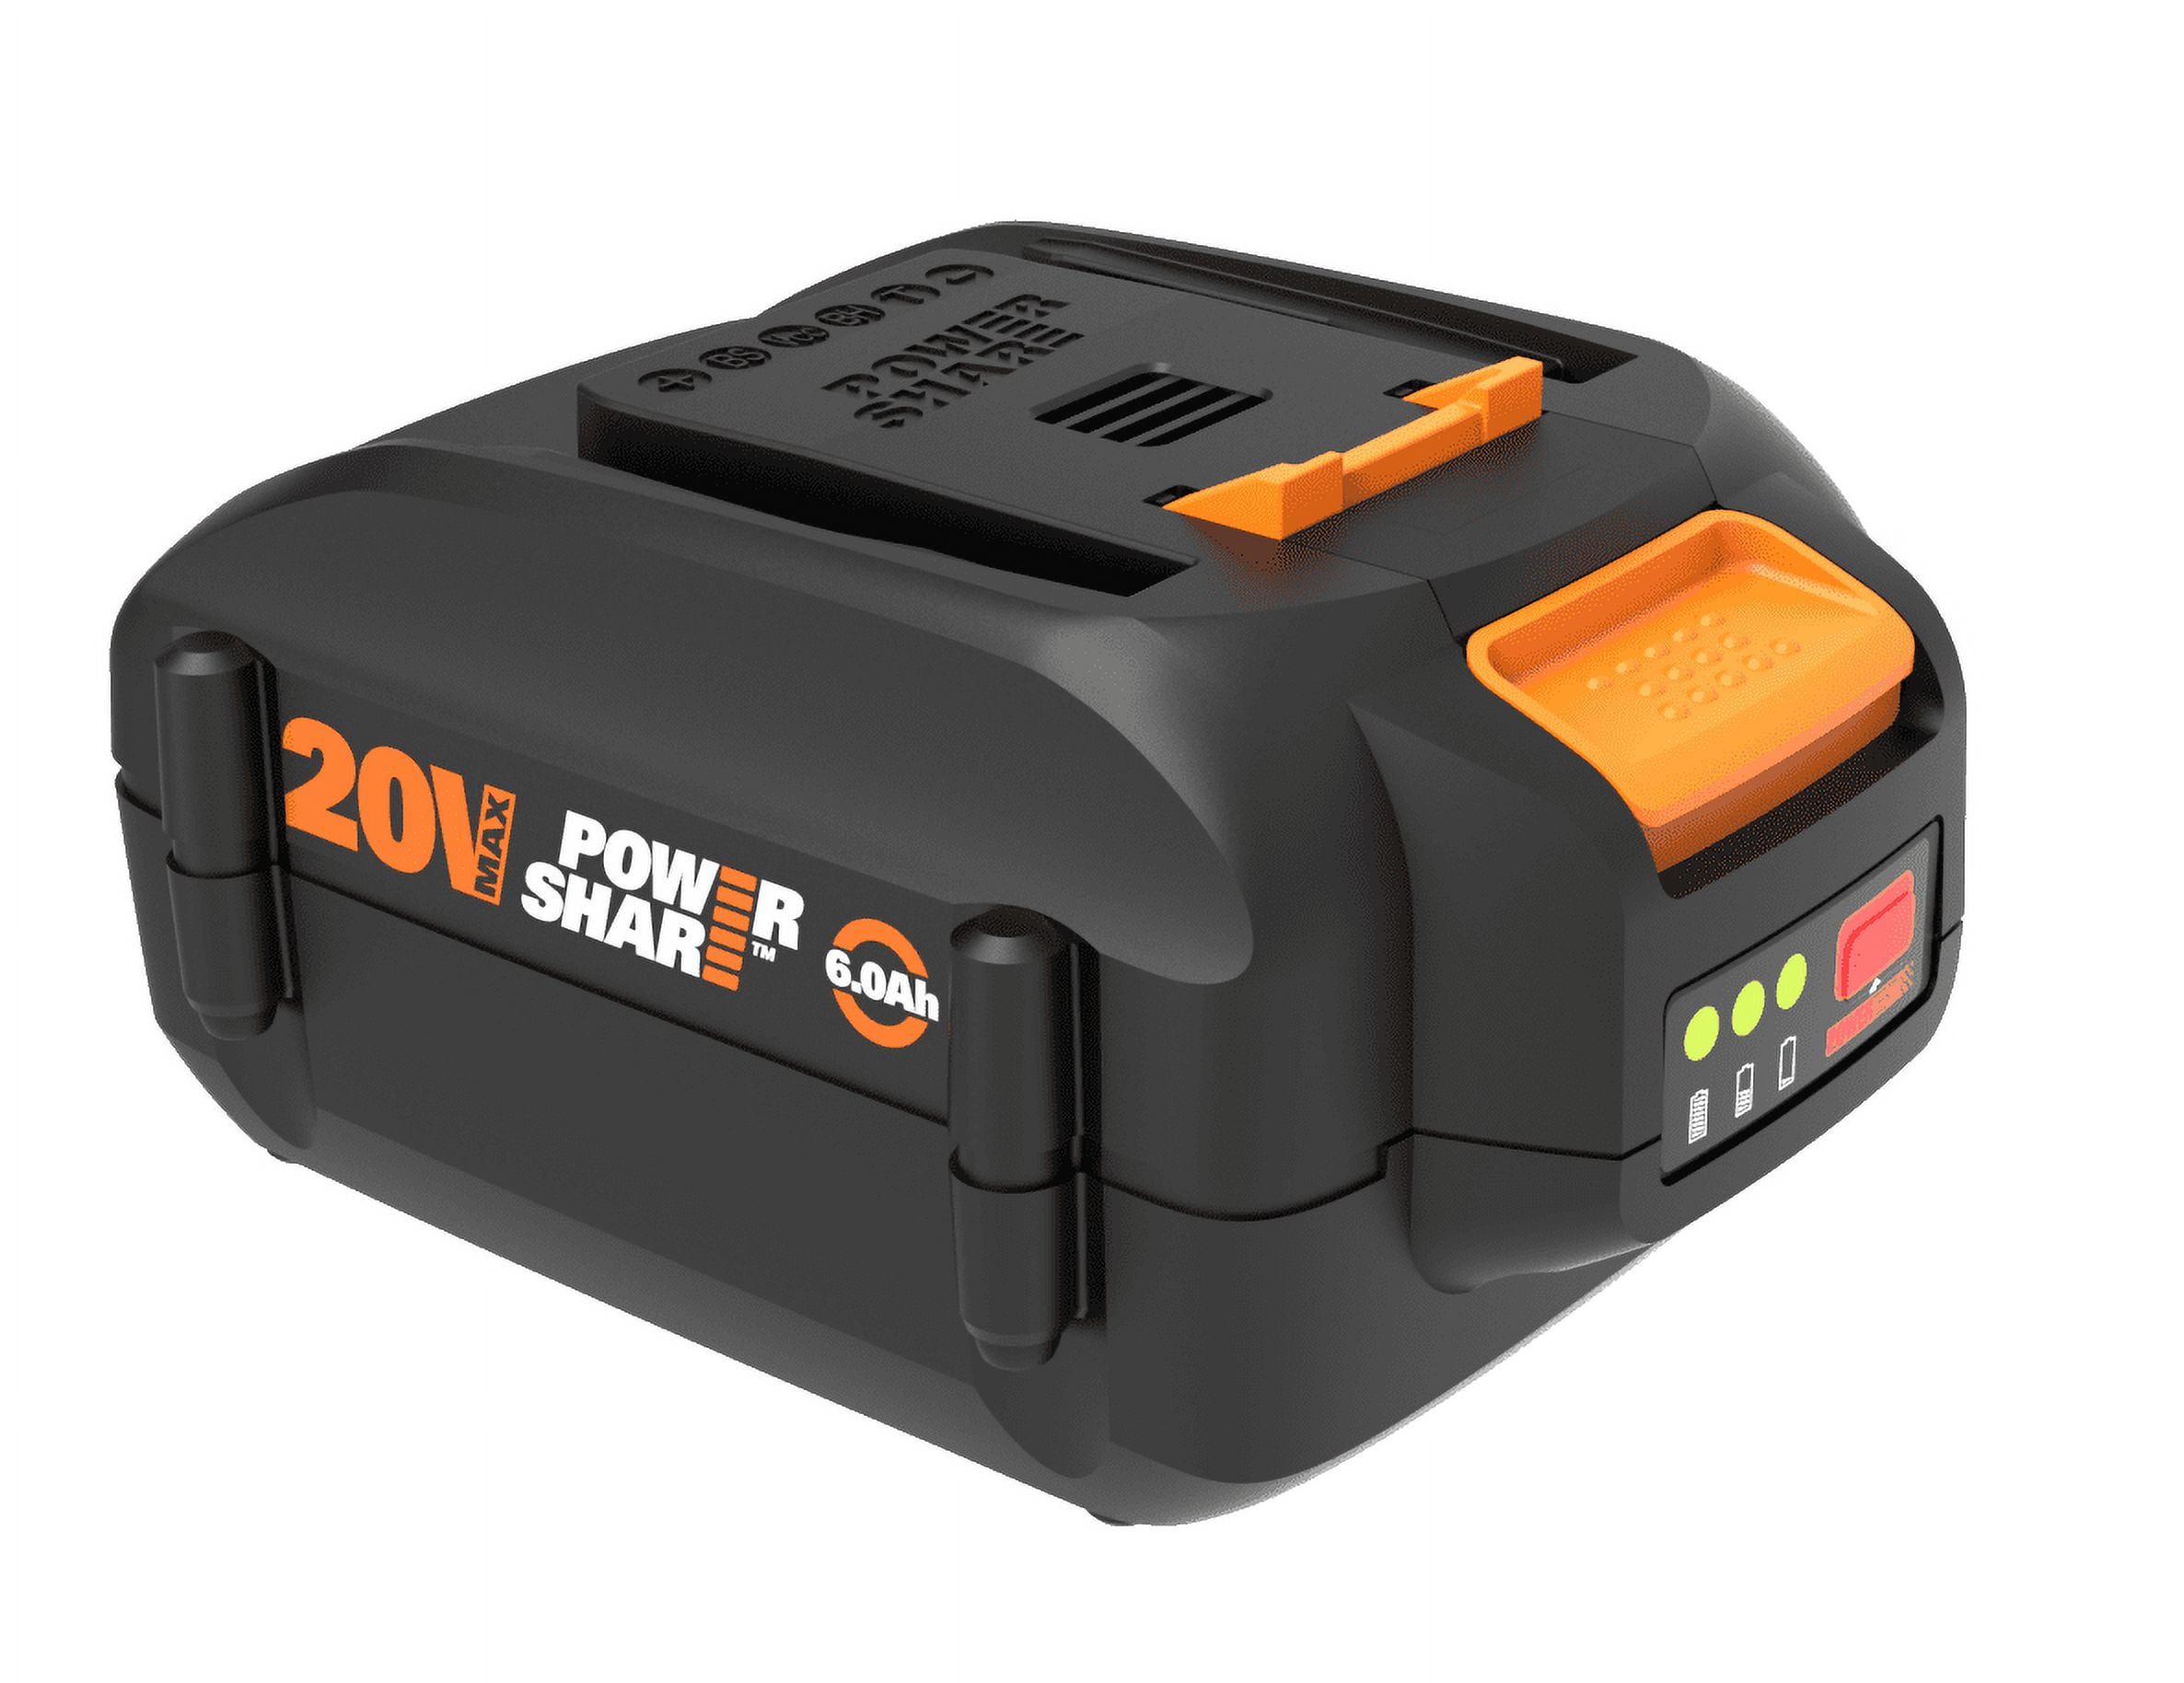 Worx Power Share Pro 20V Max 6Ah High Capacity Battery